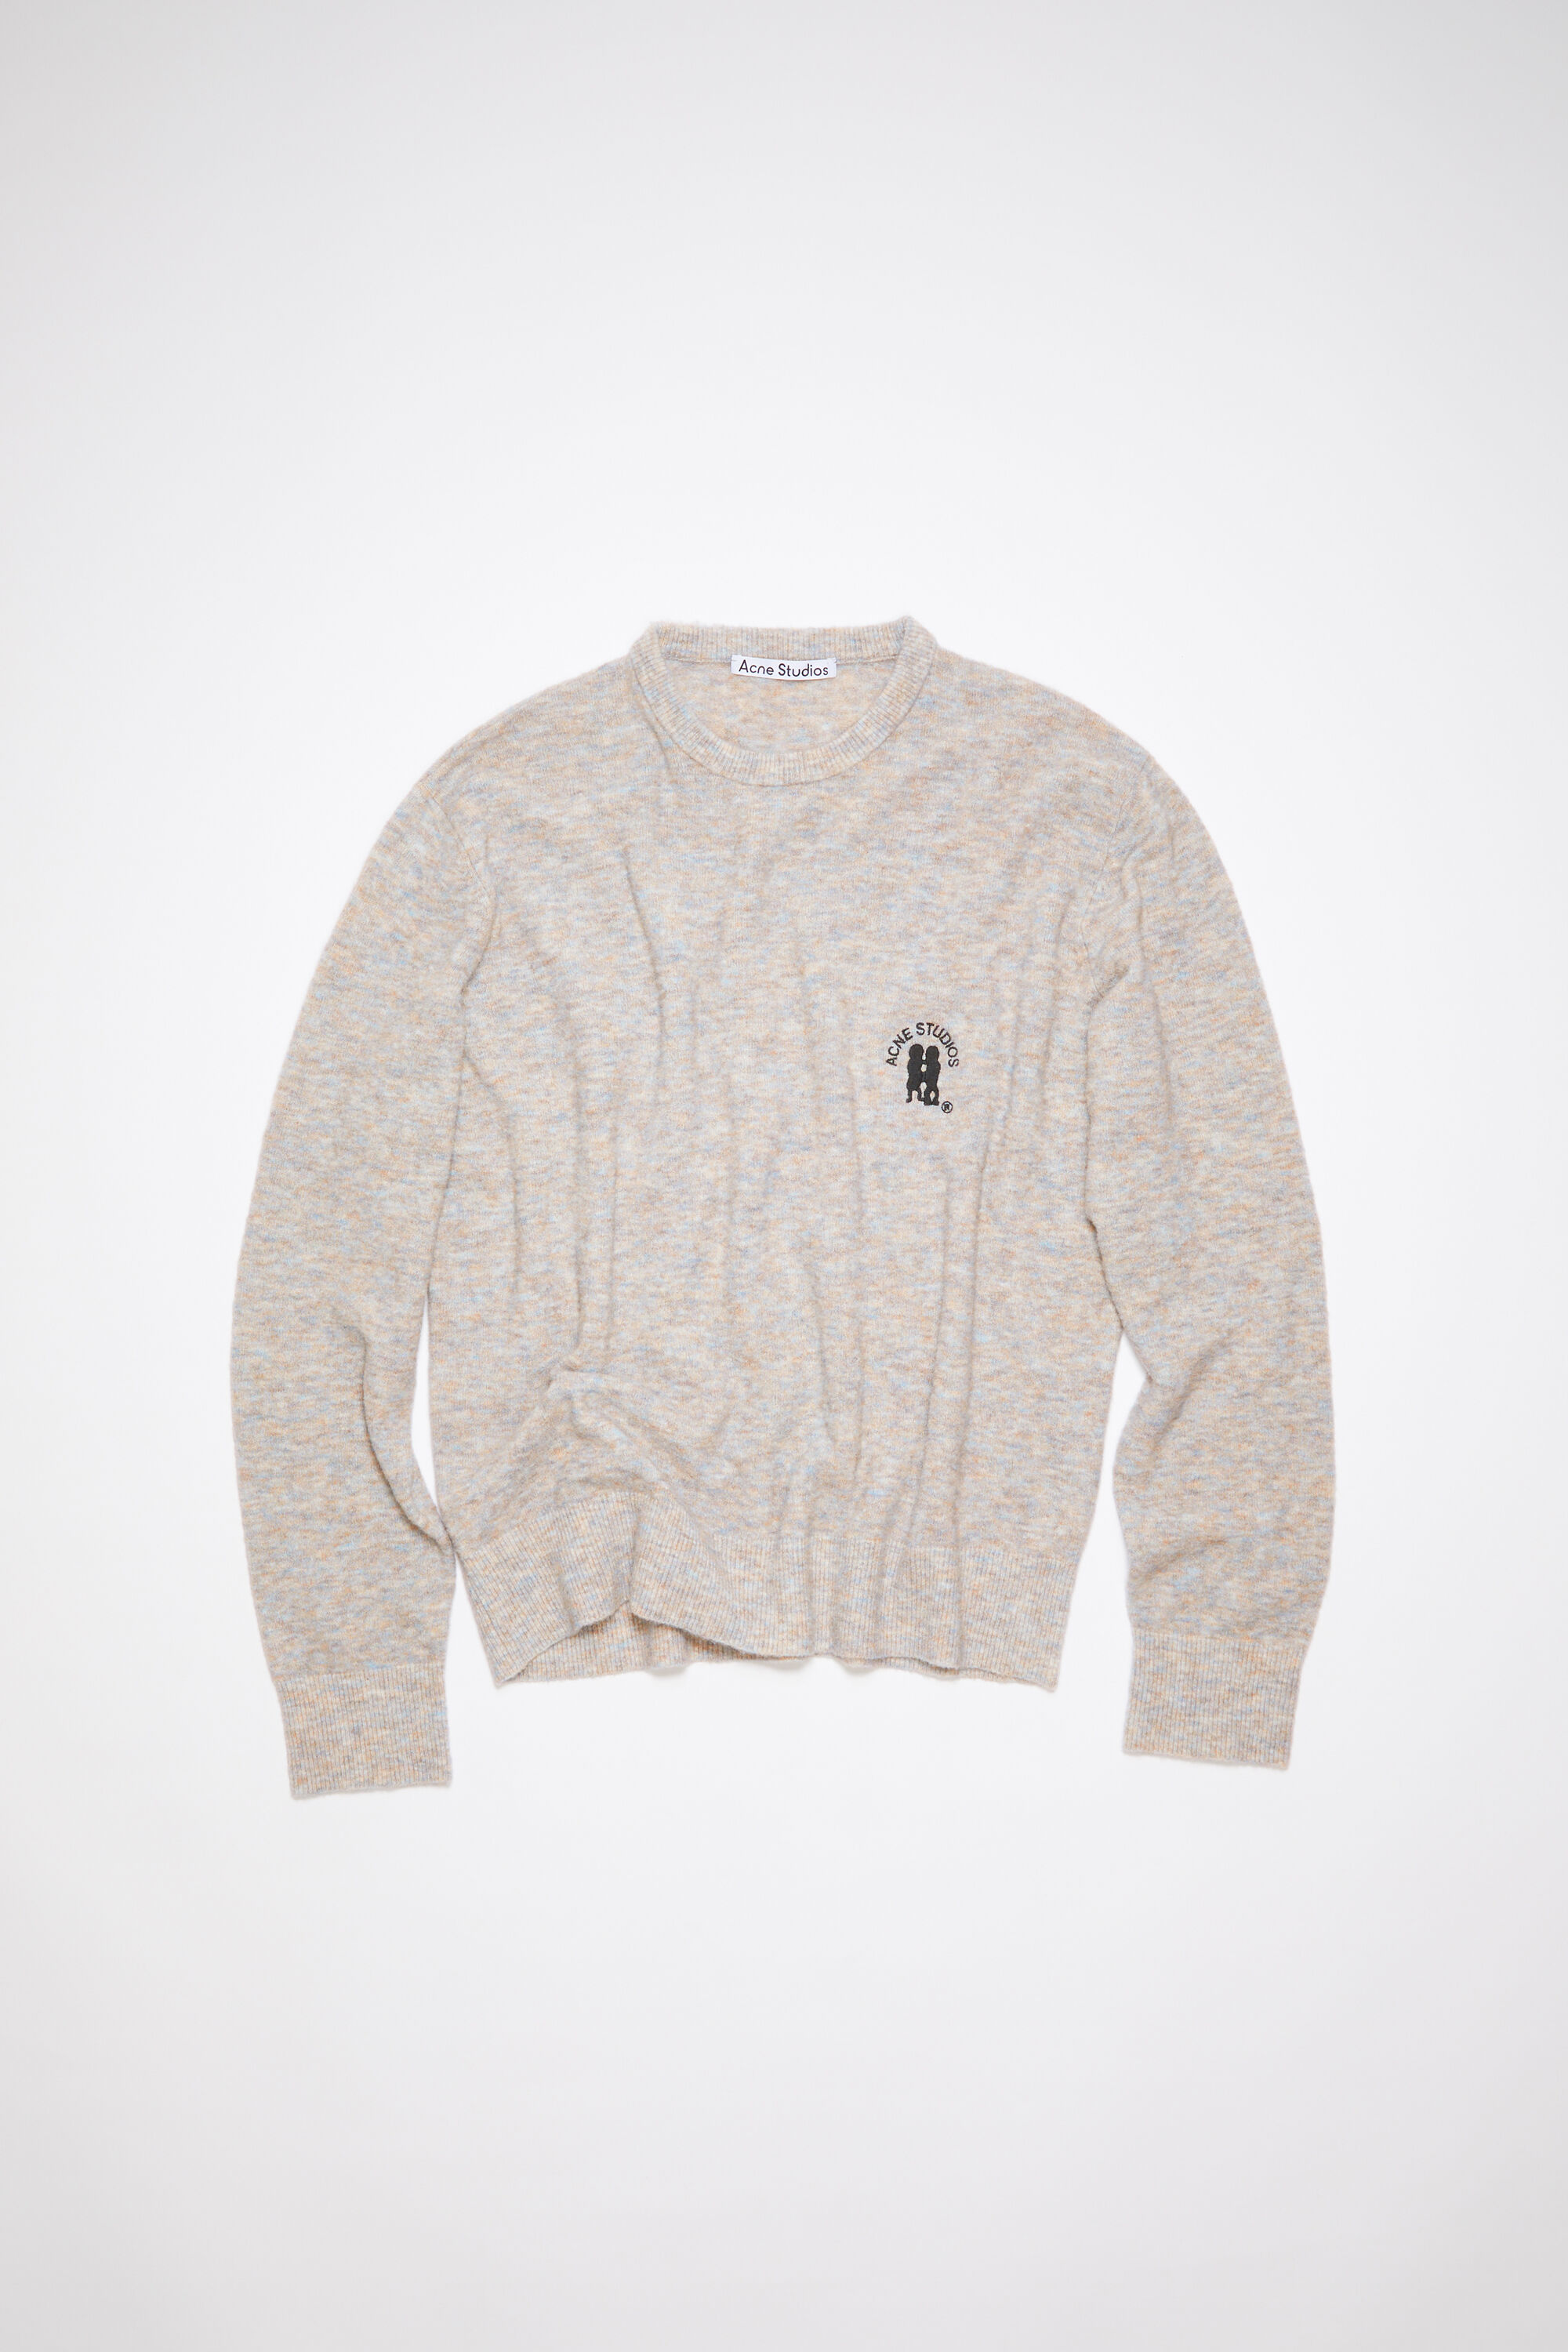 Acne Studios - Embroidered logo jumper - Light Grey/Brown Melange